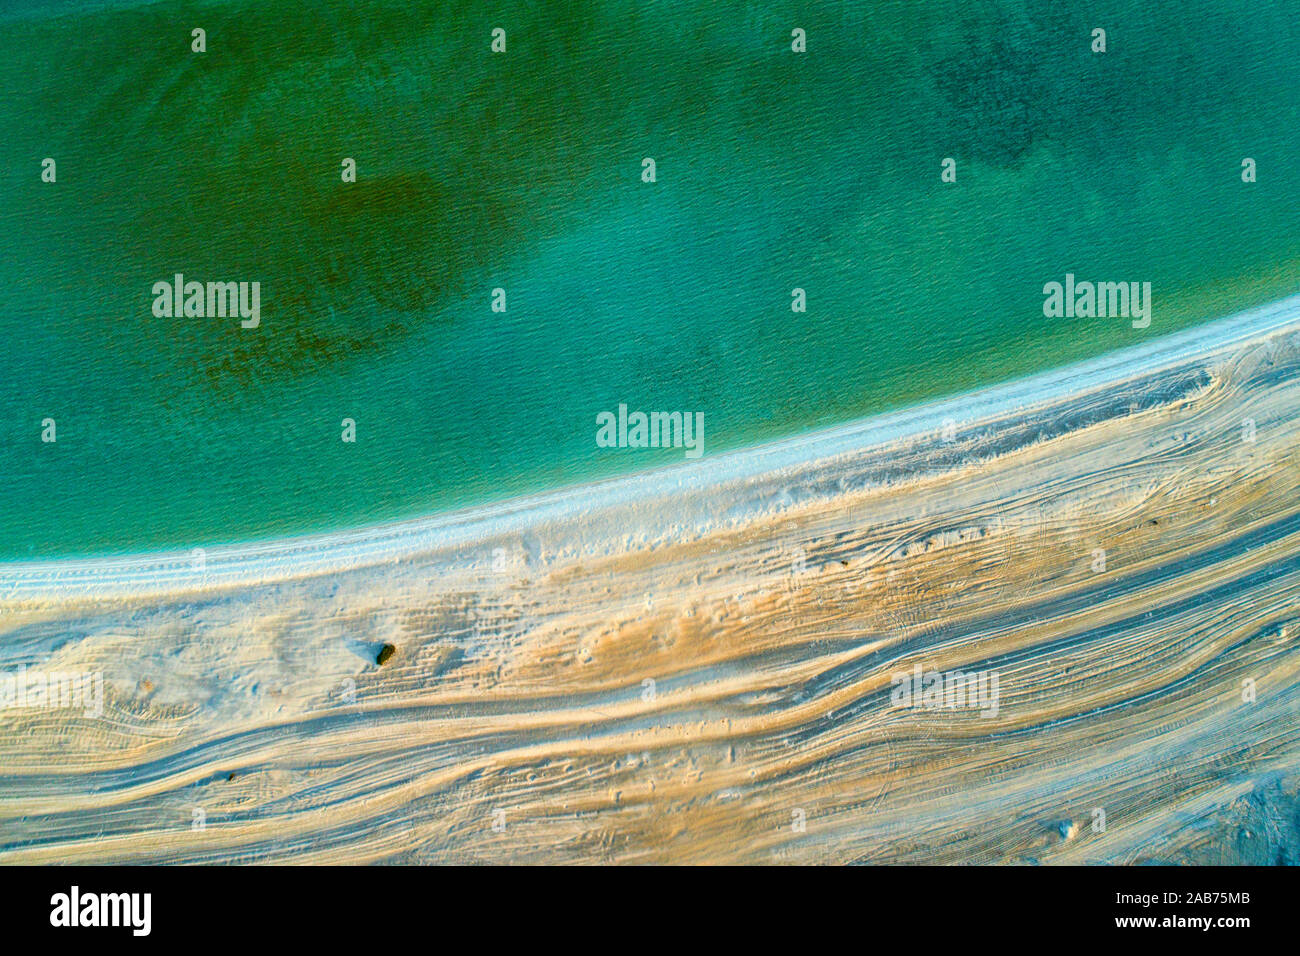 Vue aérienne de la plage Shell aire de patrimoine mondial, péninsule Peron, au nord-ouest de l'Australie, l'Australie Occidentale Banque D'Images